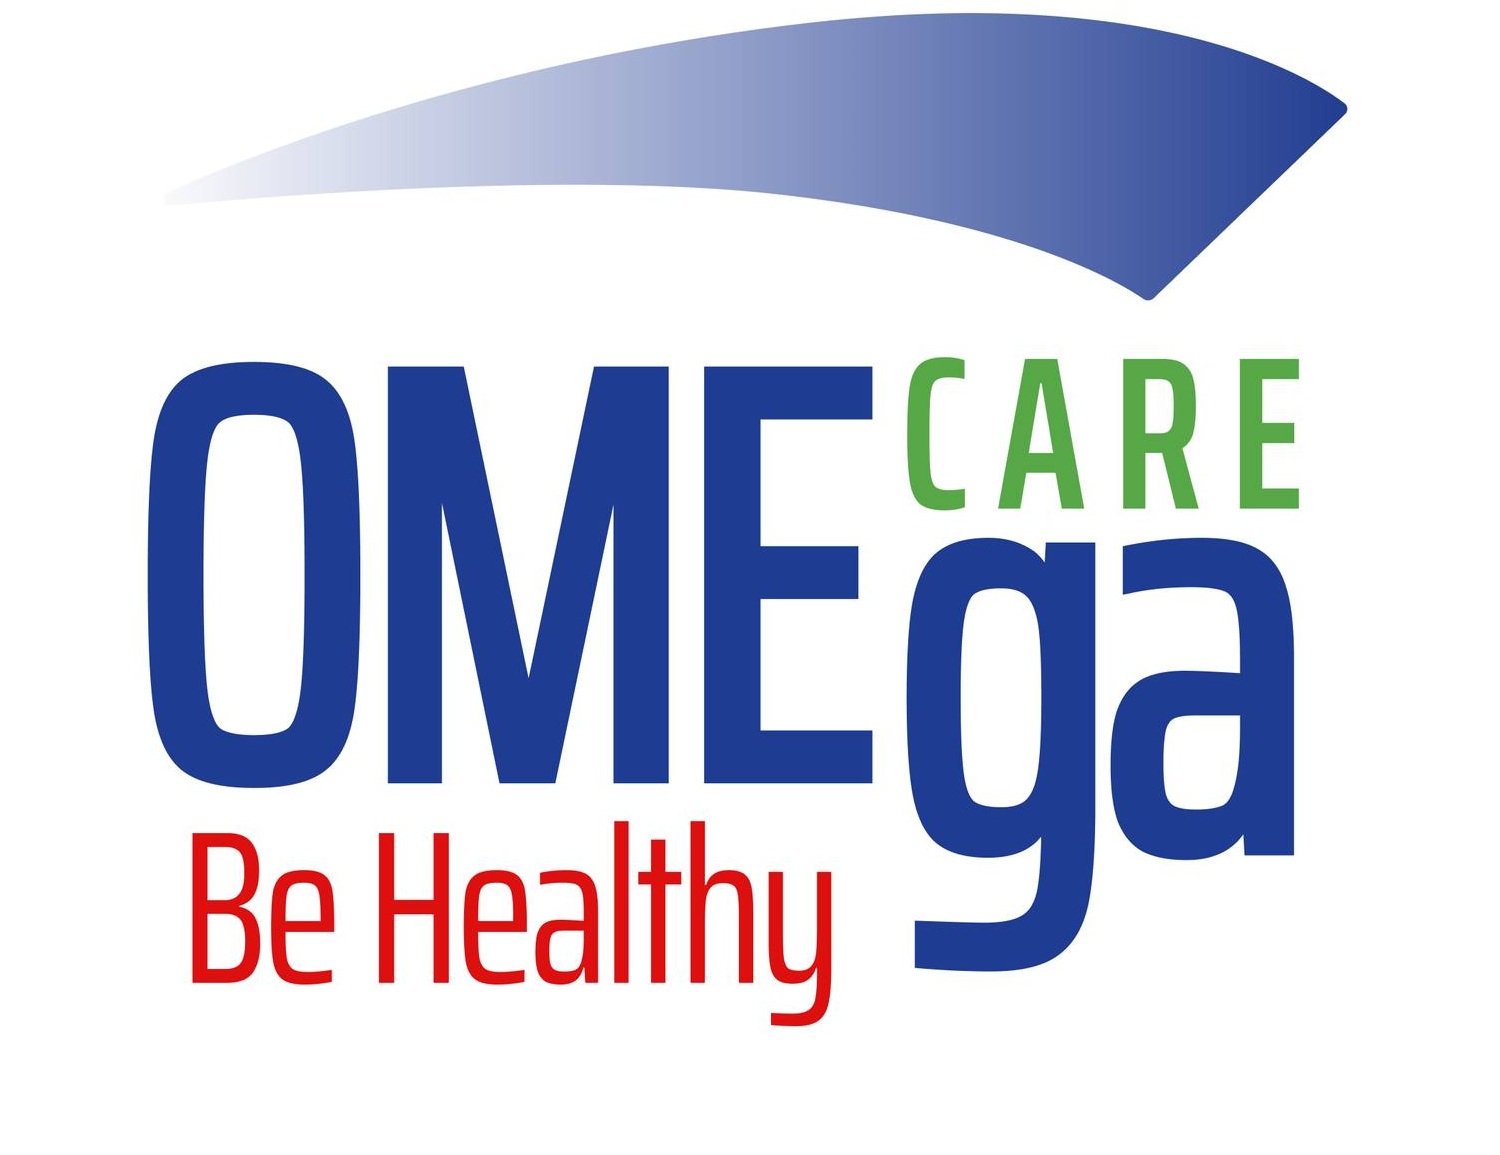 Omega Care